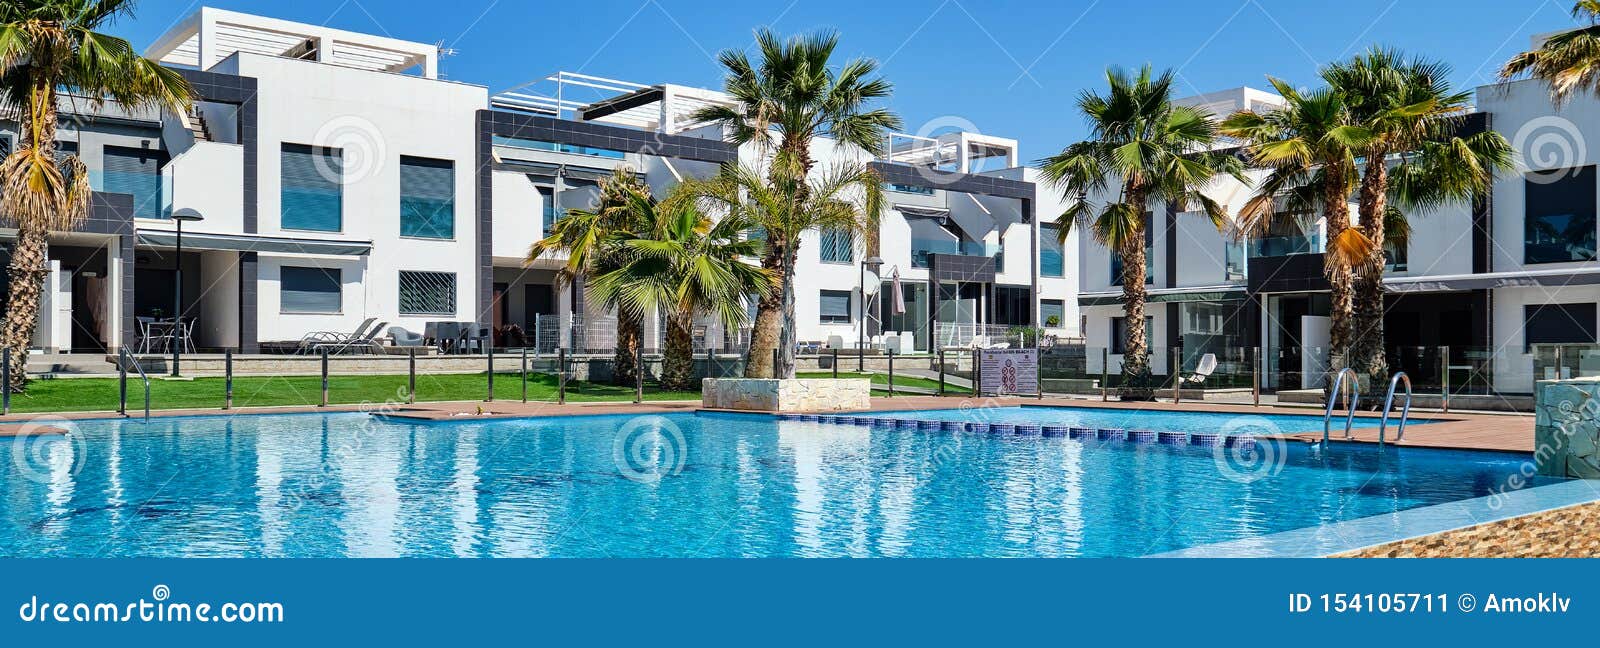 Πανοραμικά όμορφα δημαρχεία εικόνας με την πισίνα, Torrevieja, Ισπανία. Πανοραμικά όμορφα σύγχρονα σύγχρονα δημαρχεία εικόνας με την πισίνα, Torrevieja, Ισπανία